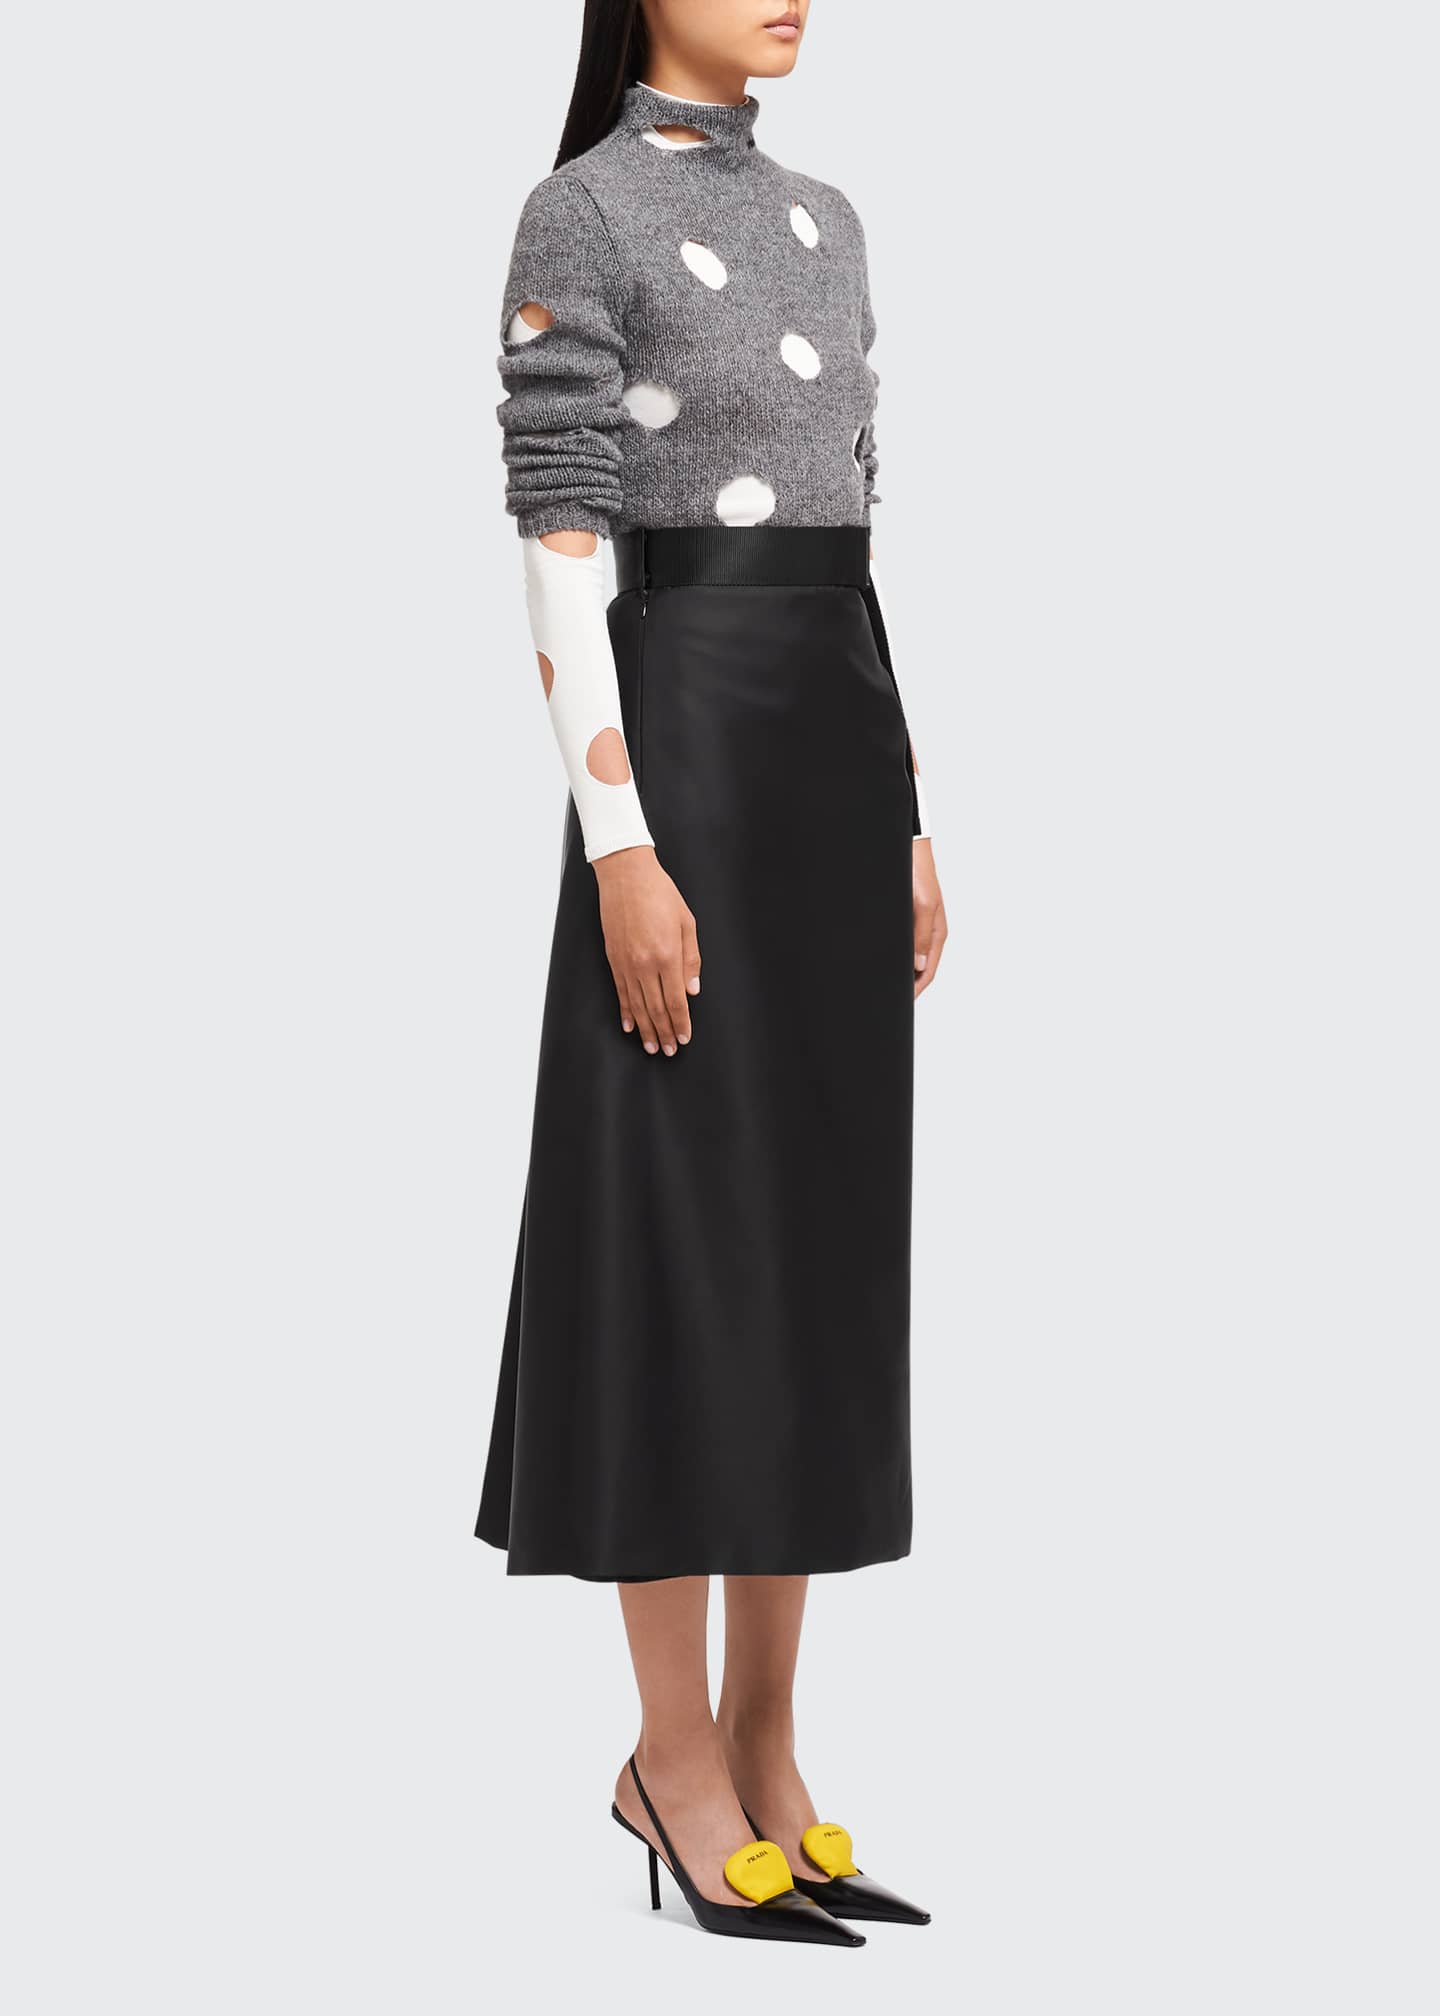 Prada Re-Nylon Belted Midi Skirt - Bergdorf Goodman